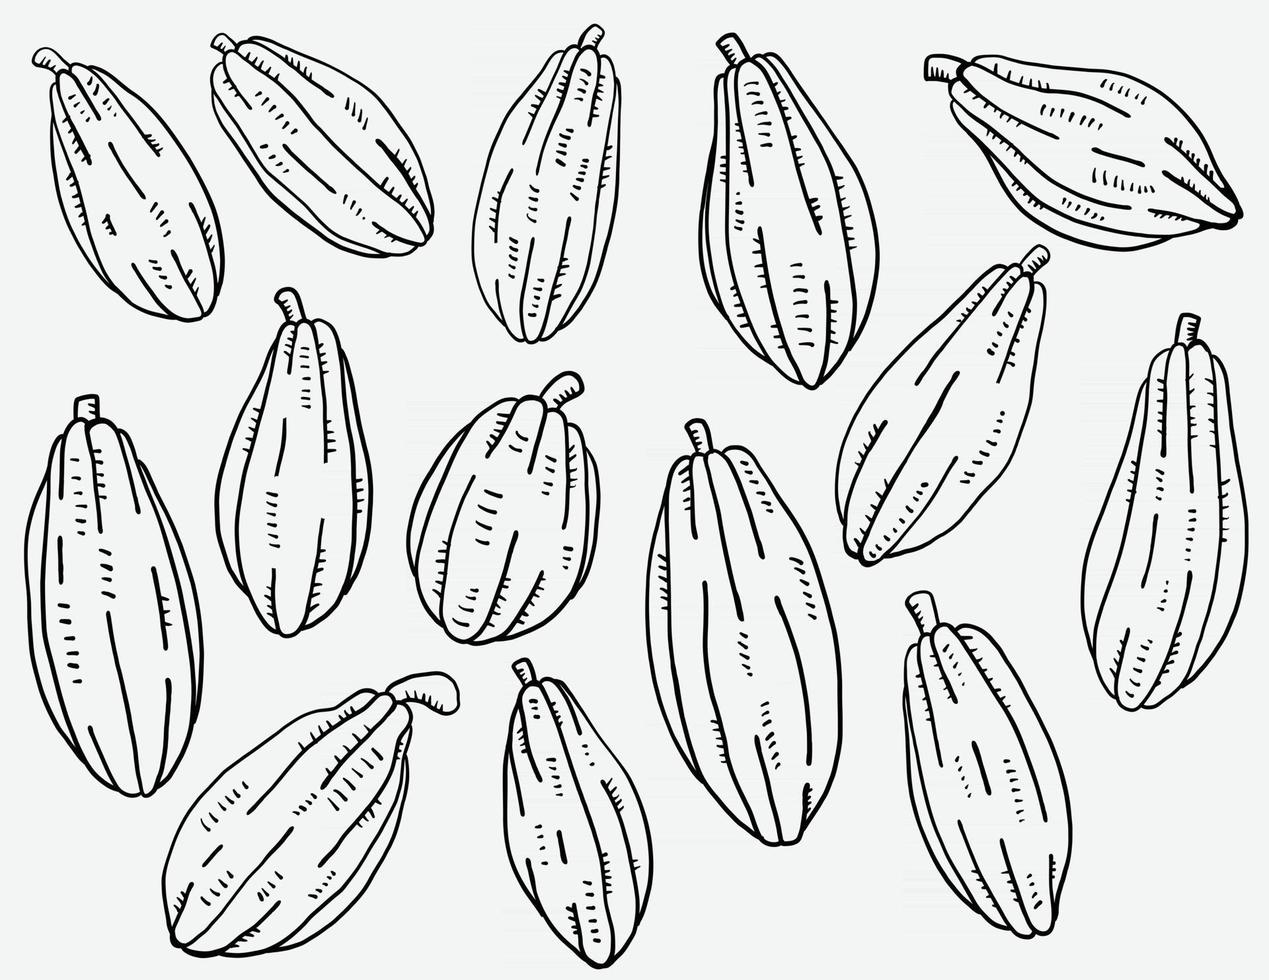 doodle desenho esboço à mão livre da coleção de frutas de cacau vetor